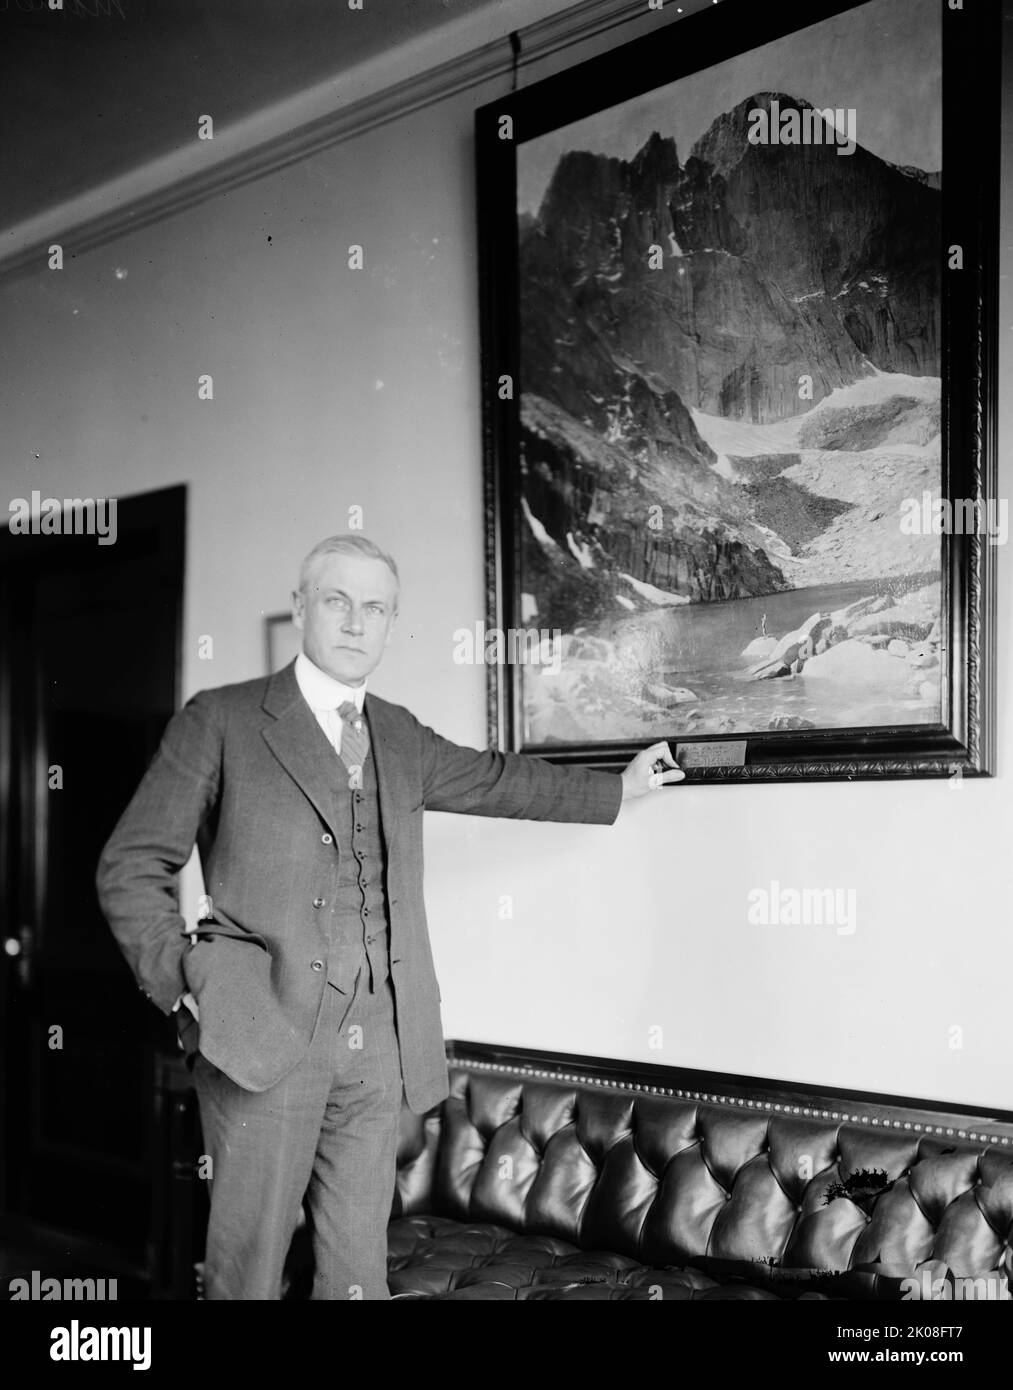 Stephen Mather, entre 1910 et 1920. [STEPHEN Tyng Mather, industriel et conservateur AMÉRICAIN, a été le premier directeur du Service national des parcs]. Banque D'Images